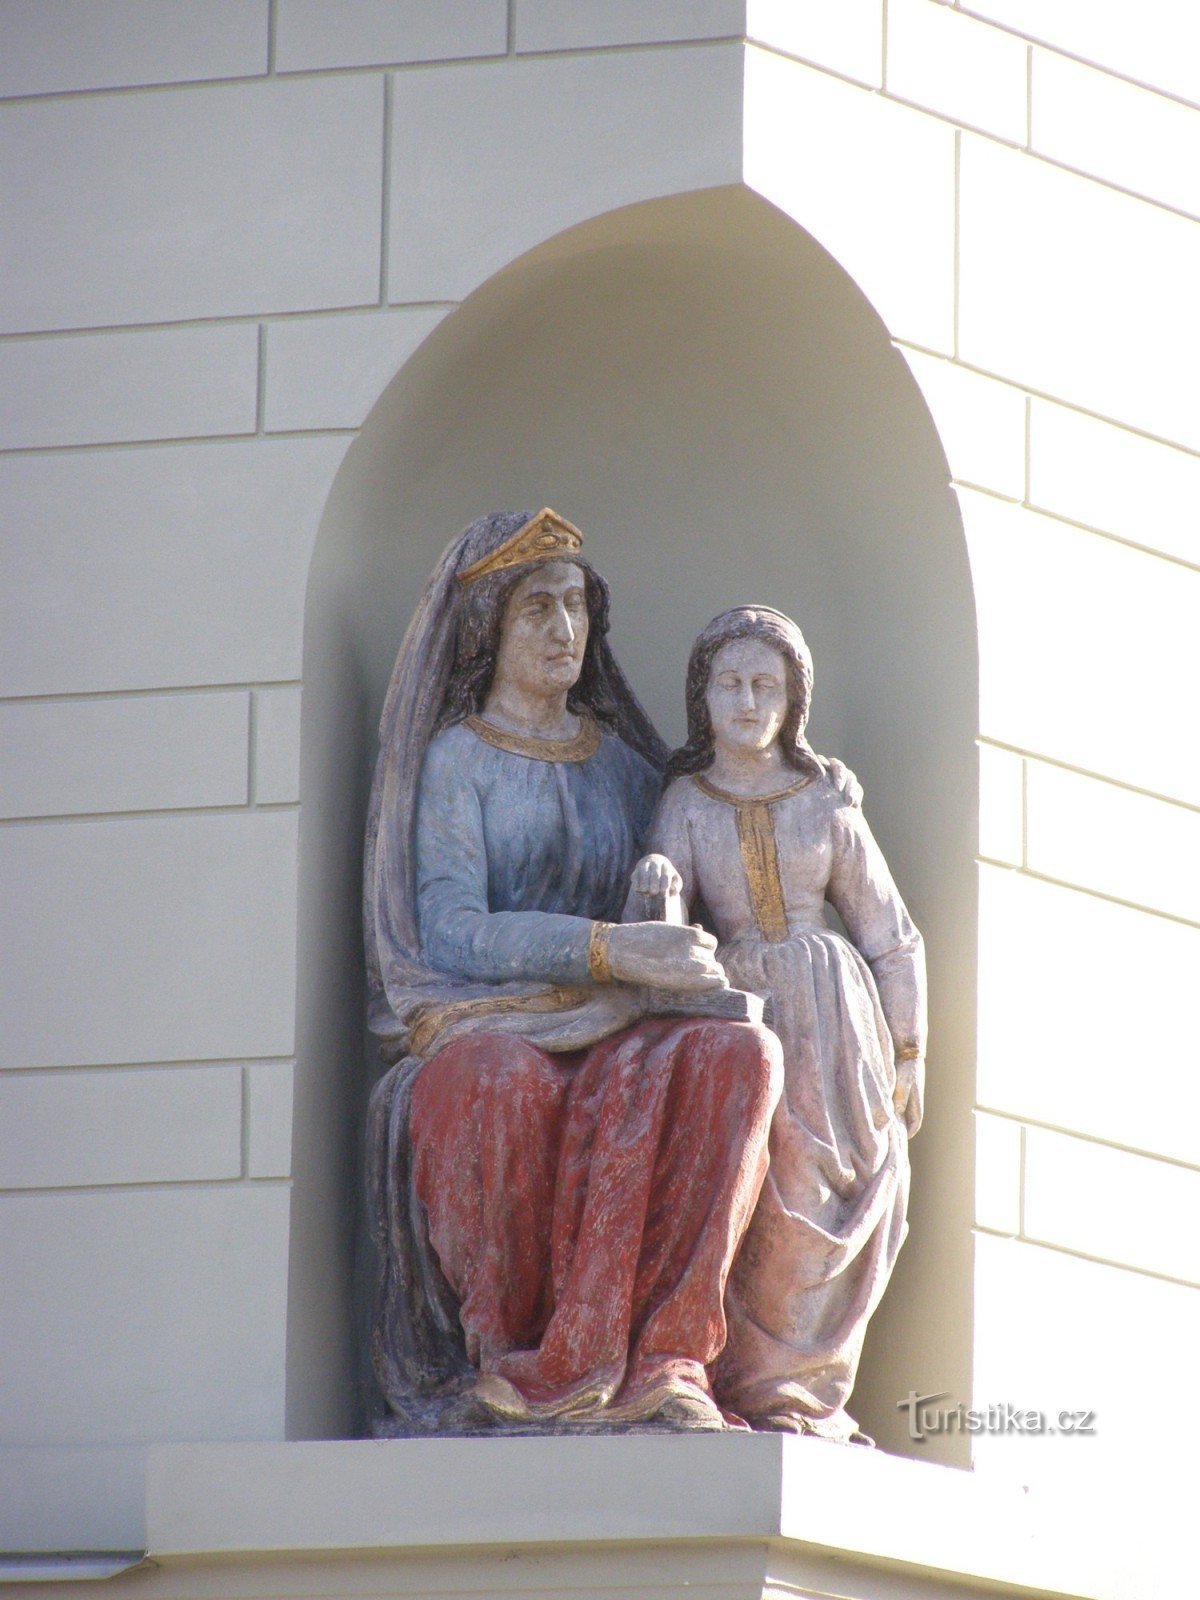 Тынец-над-Лабем - мещанский дом № 74 со статуей св. Анна и Дева Мария